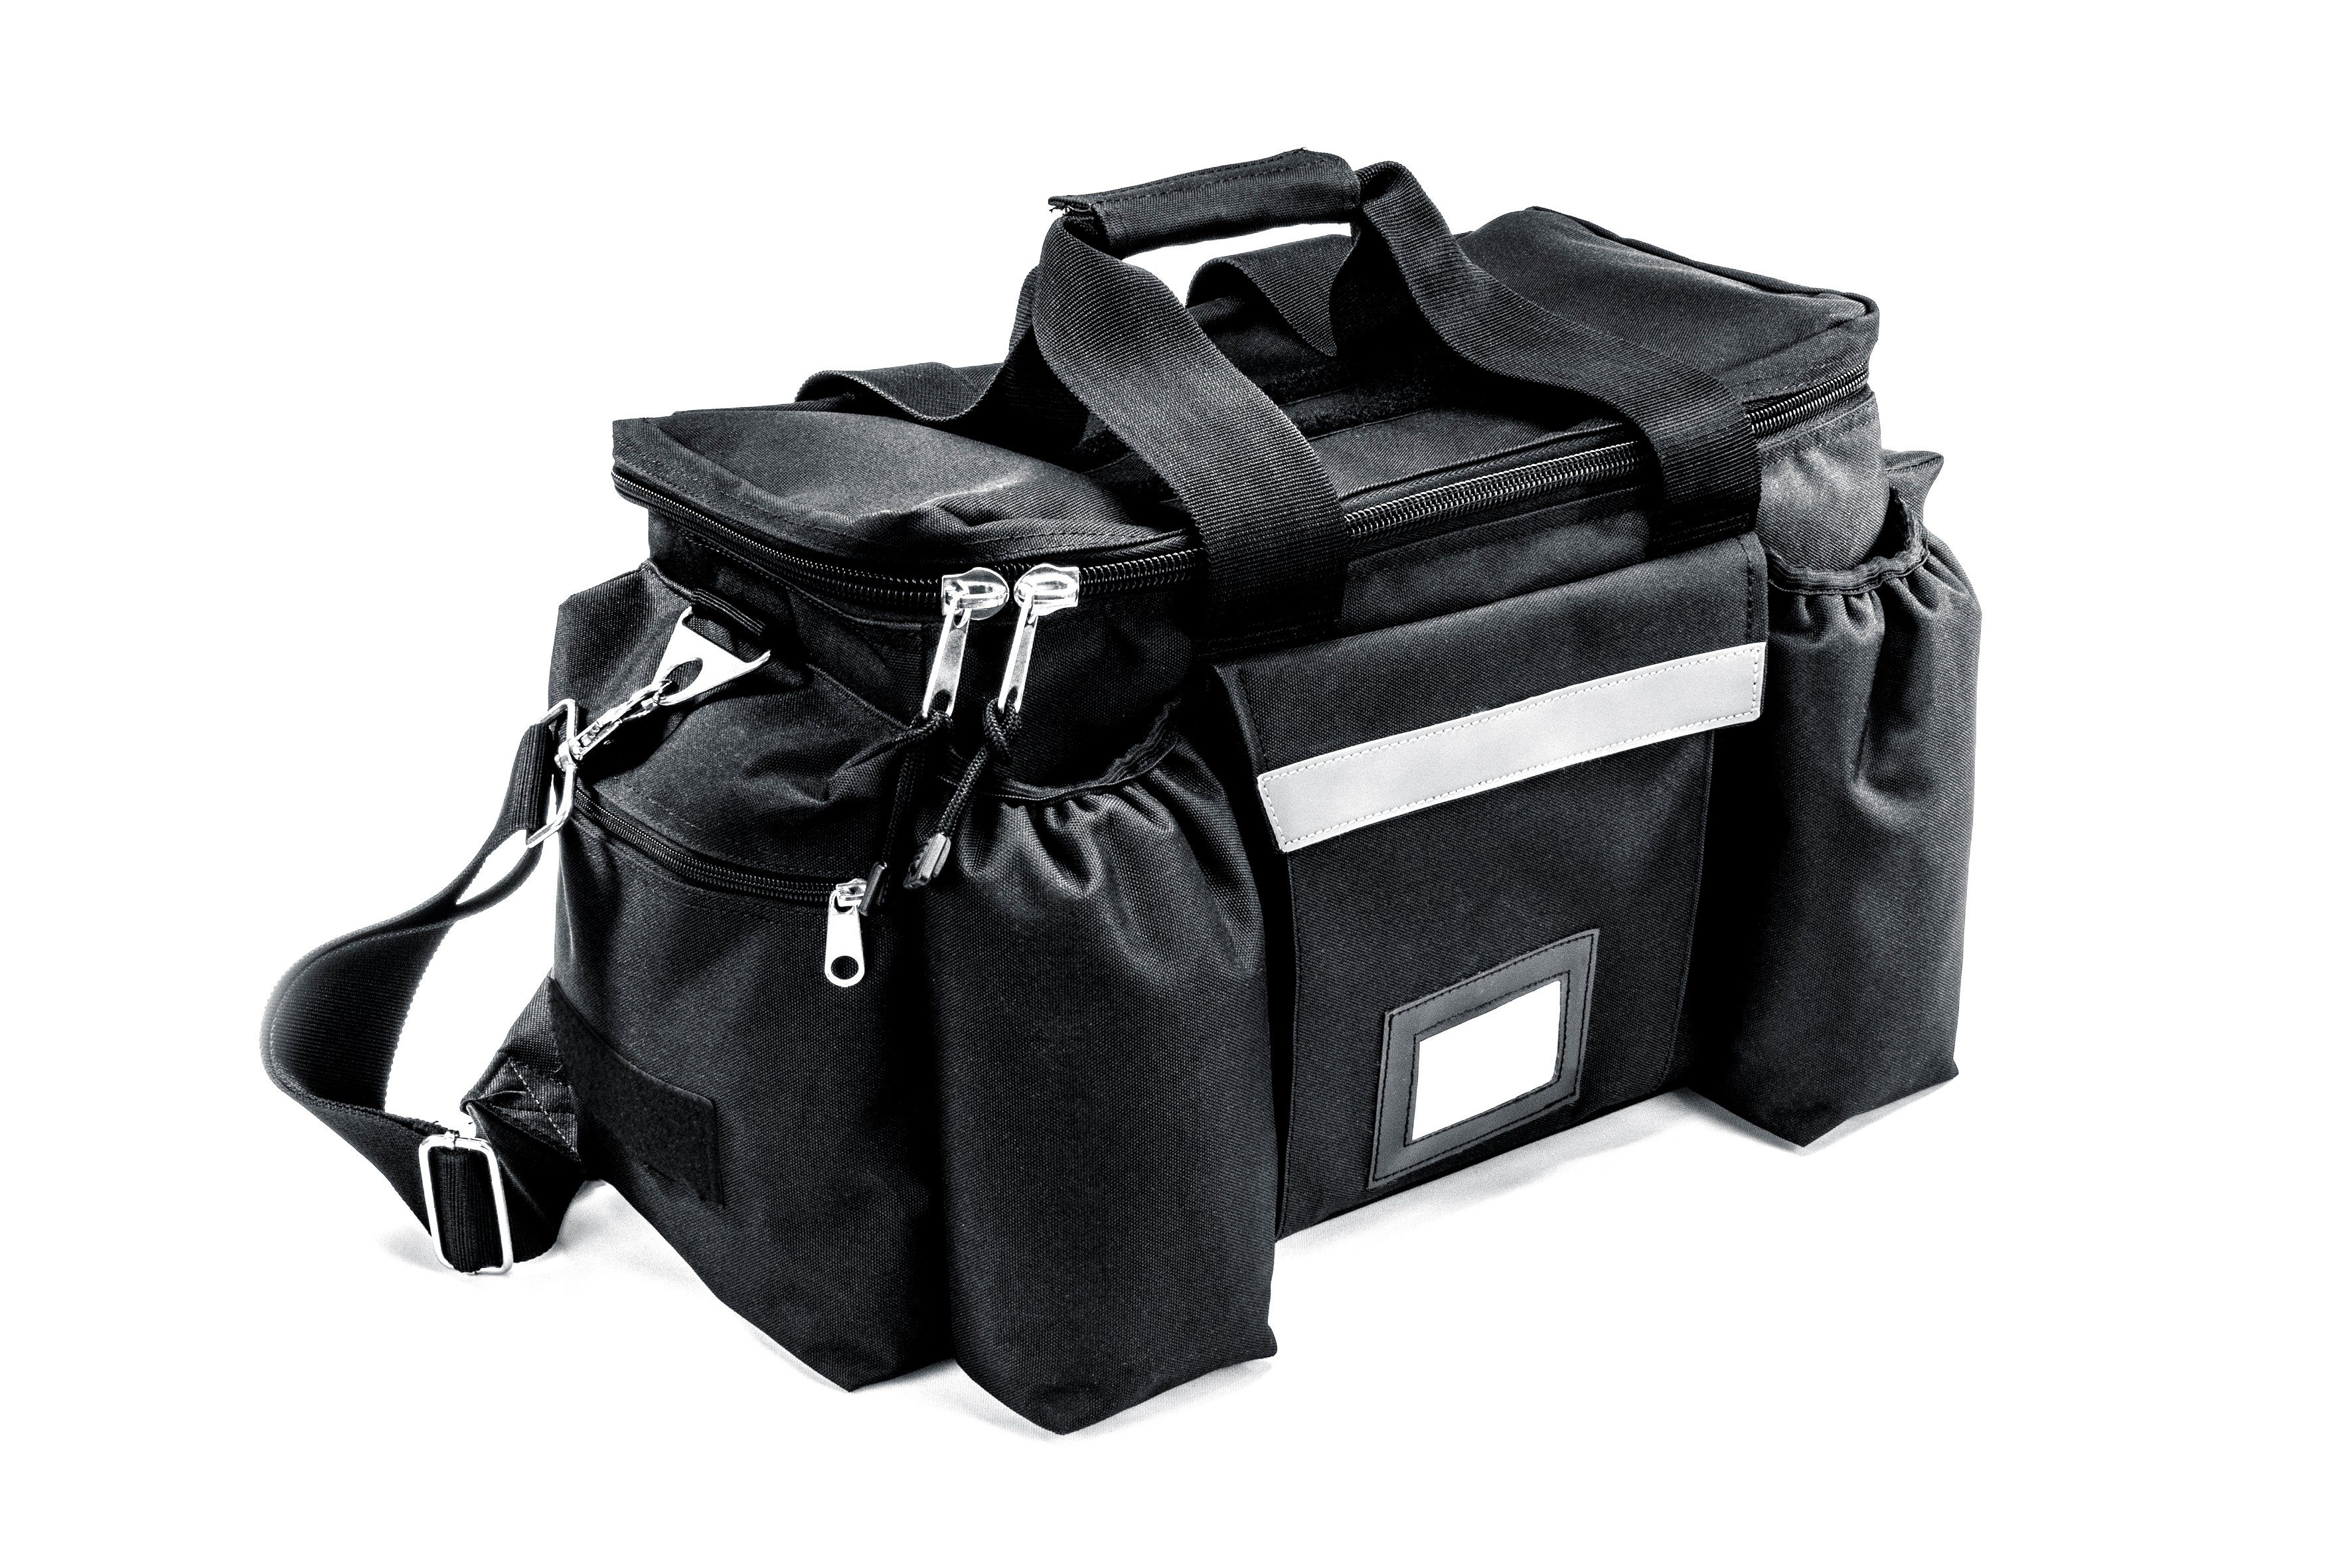 Polizei- Tasche Einsatztasche Kampfsport Einsatzkräfte Sporttasche Security  Bag